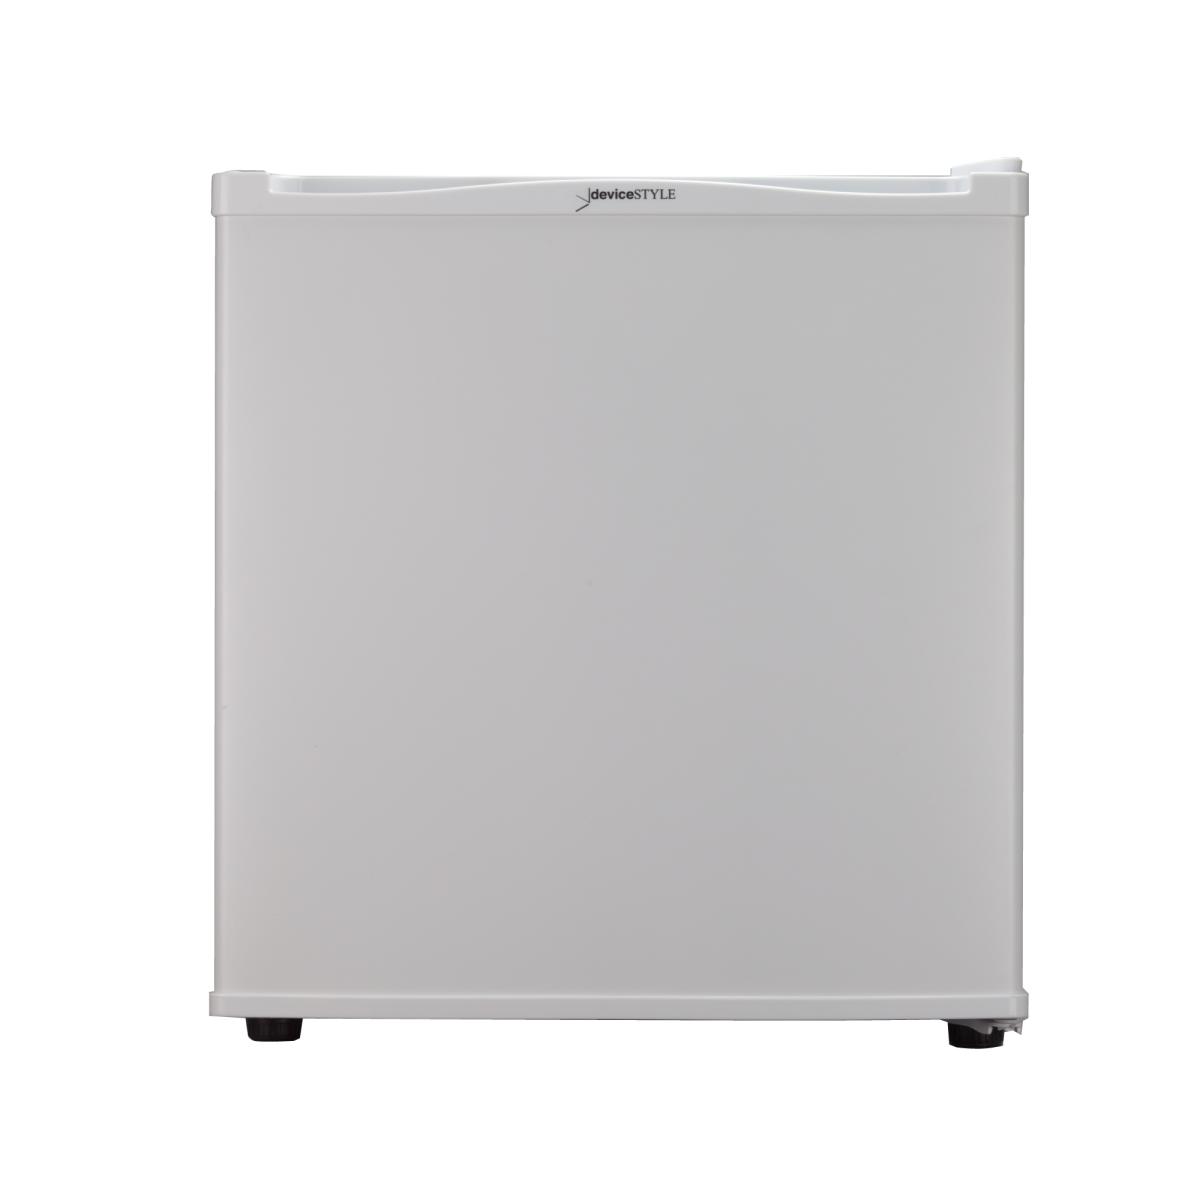 deviceSTYLE 20L ペルチェ式 1ドア冷蔵庫 ホワイト RA-P20-W